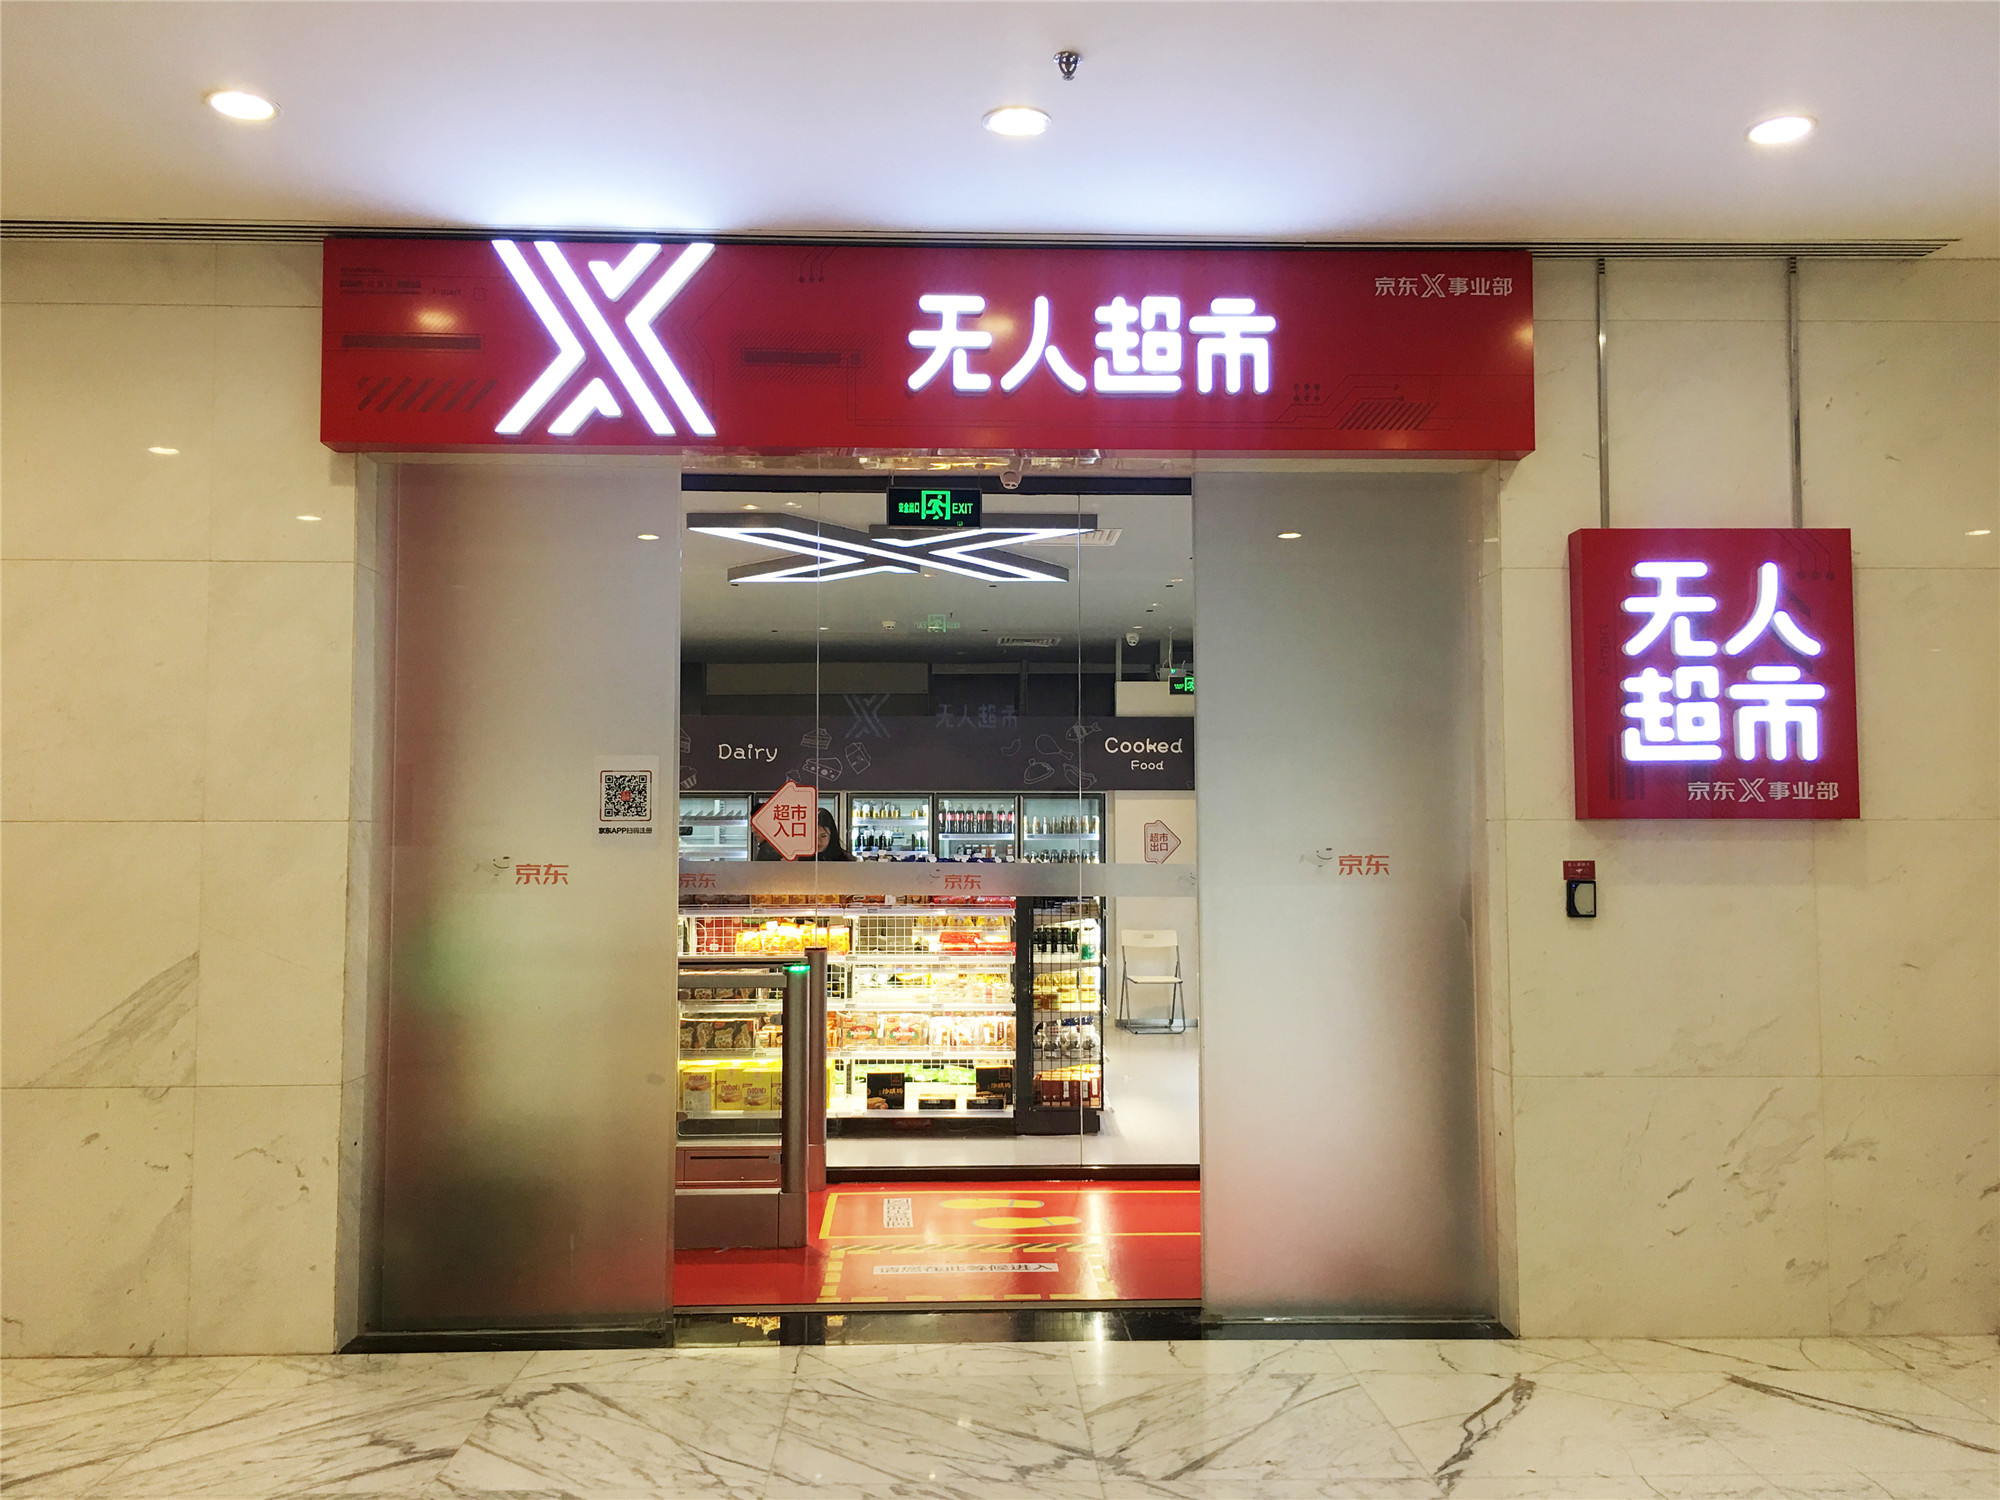 京东自主研发的无人便利店和无人超市将在京东全球总部园区正式开业